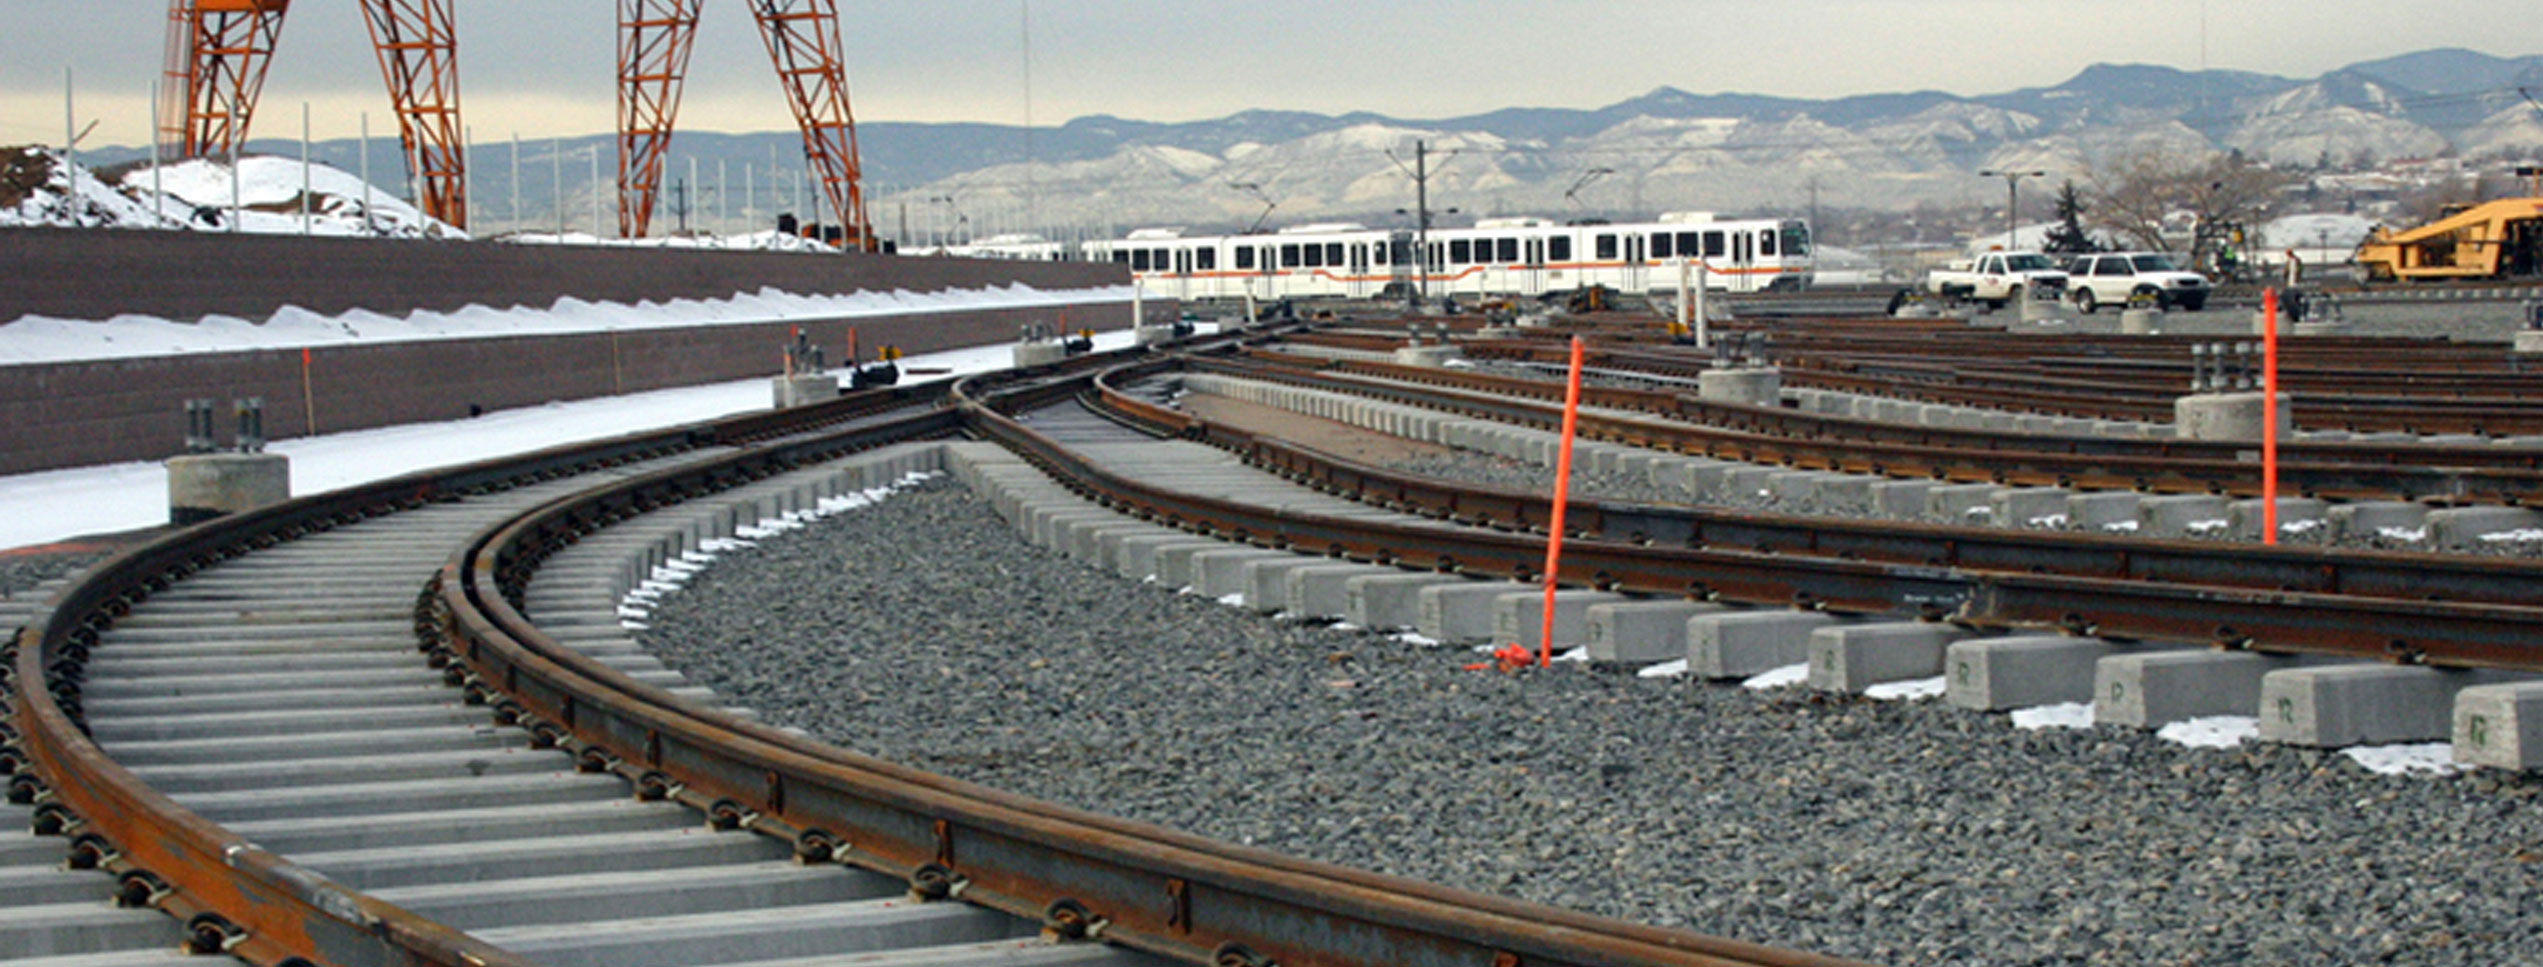 Railroad track construction site